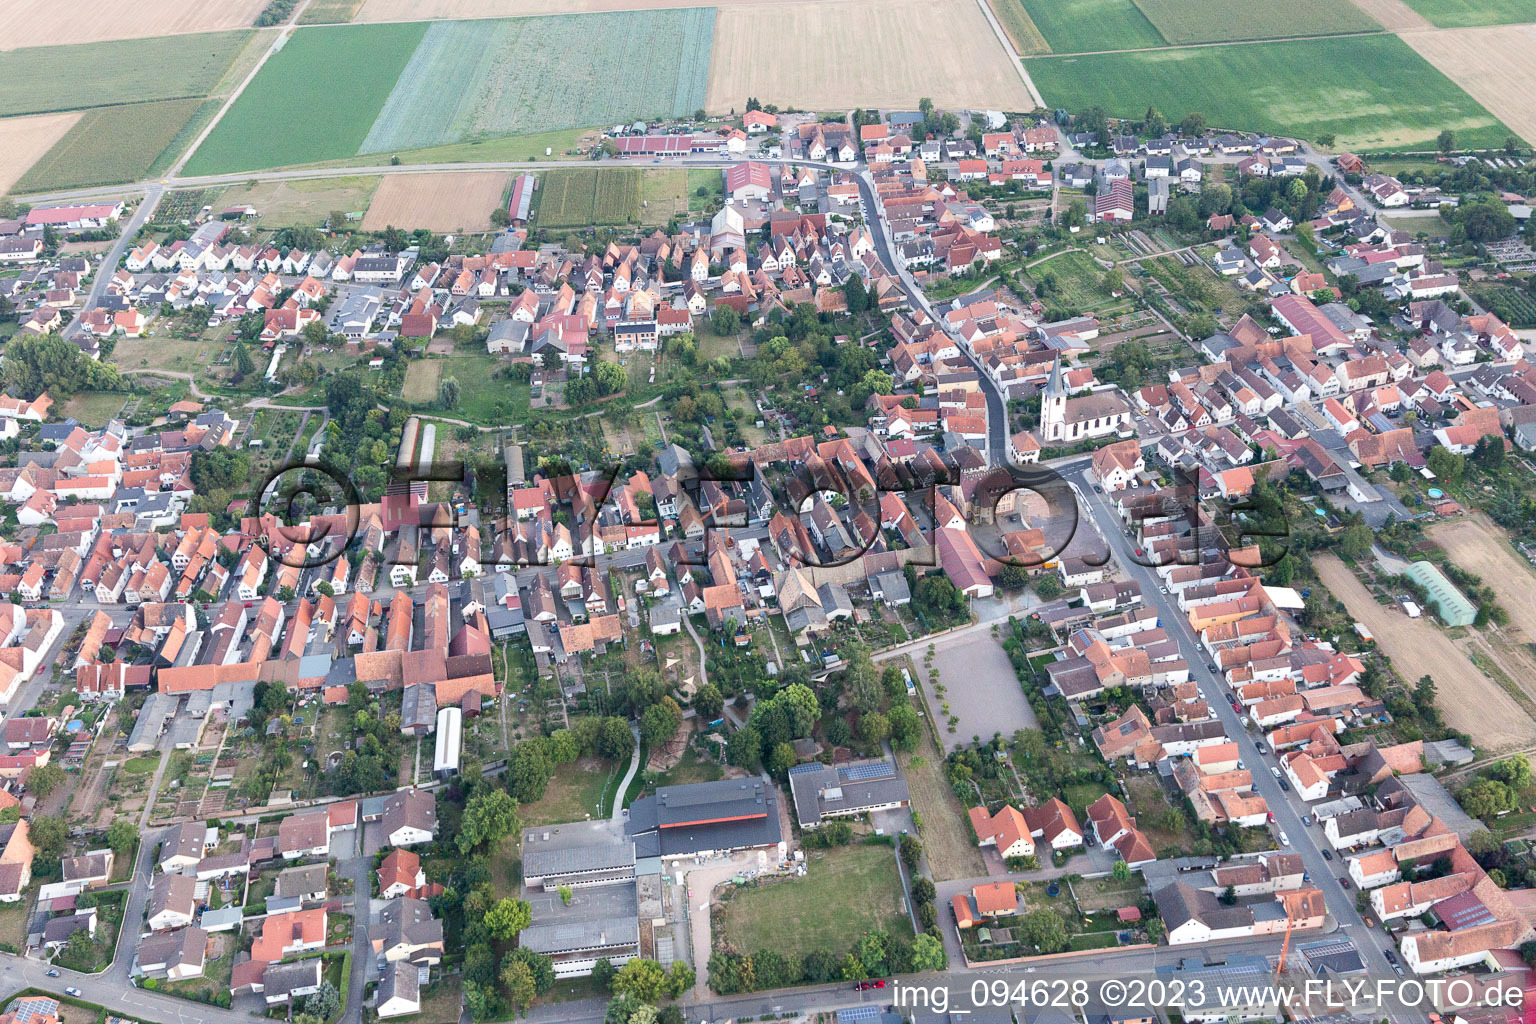 Luftbild von Ottersheim bei Landau im Bundesland Rheinland-Pfalz, Deutschland